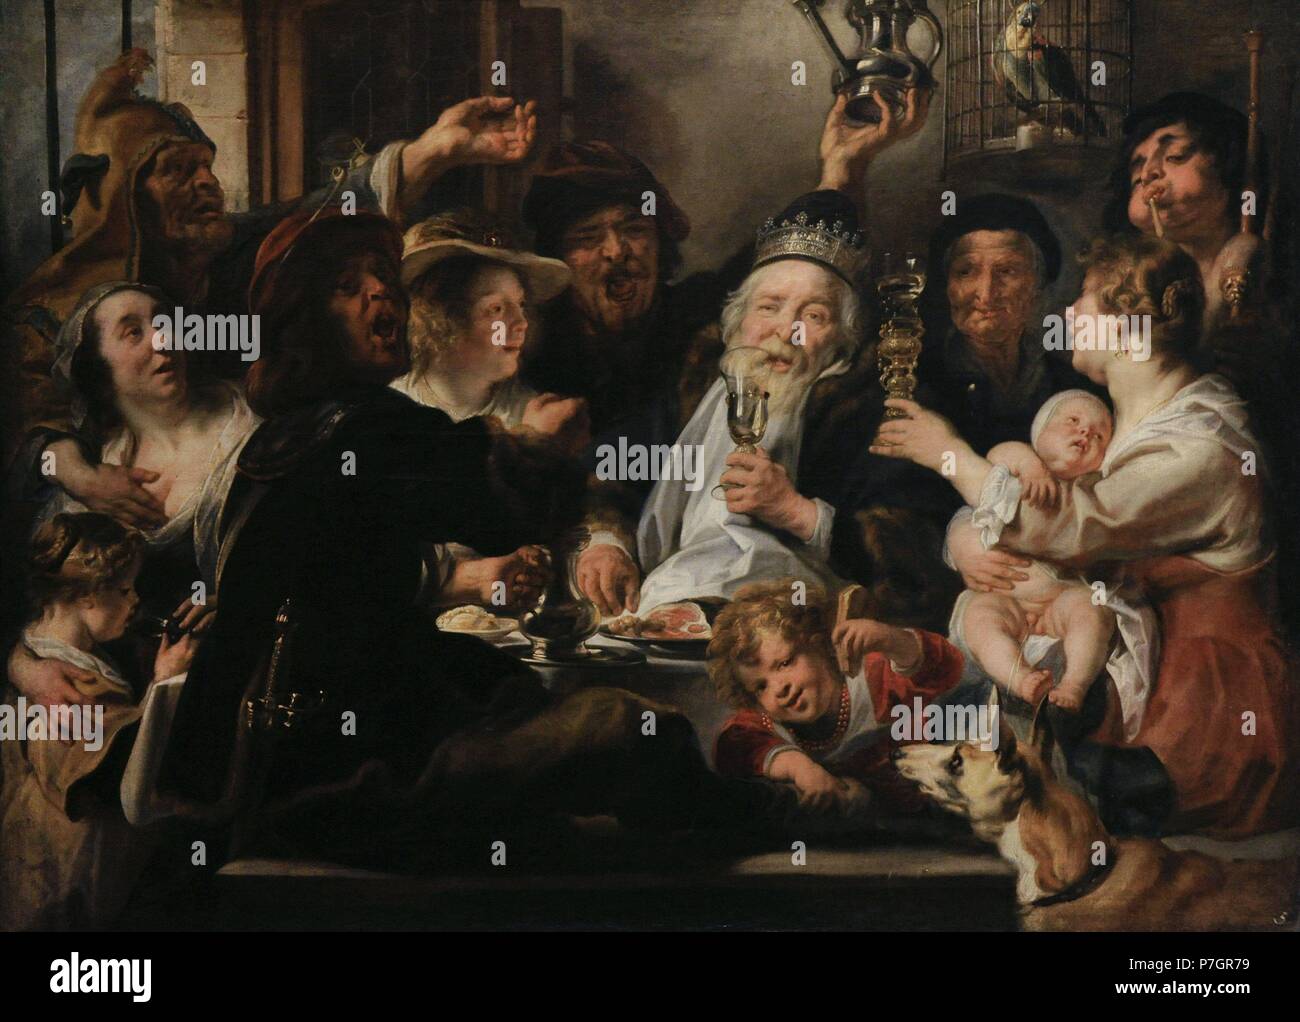 Jacob Jordaens (1593-1678). Flämischer Maler. Die Bean-König, 1638. Öl auf Leinwand. Die Eremitage. Sankt Petersburg. Russland. Stockfoto